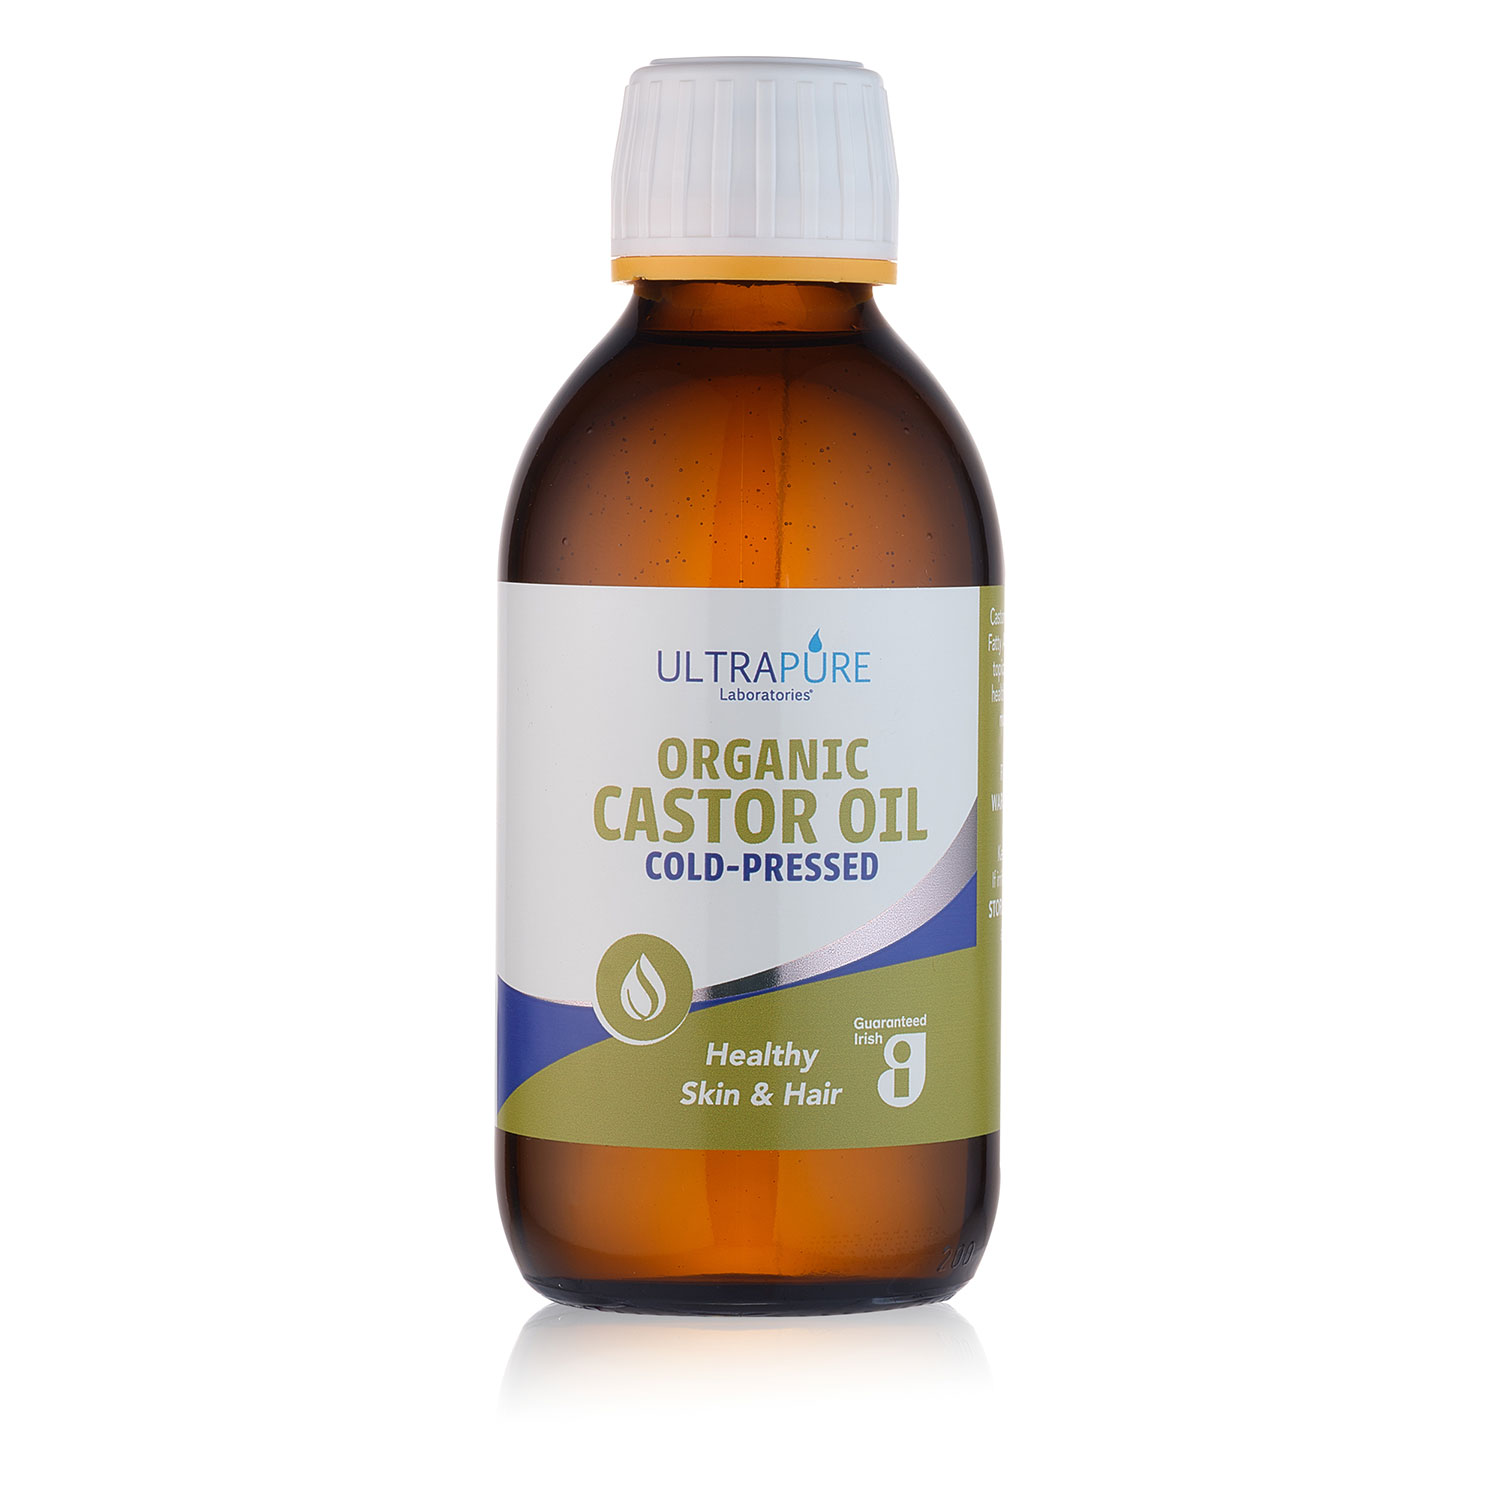 Organic Castor Oil pack shot